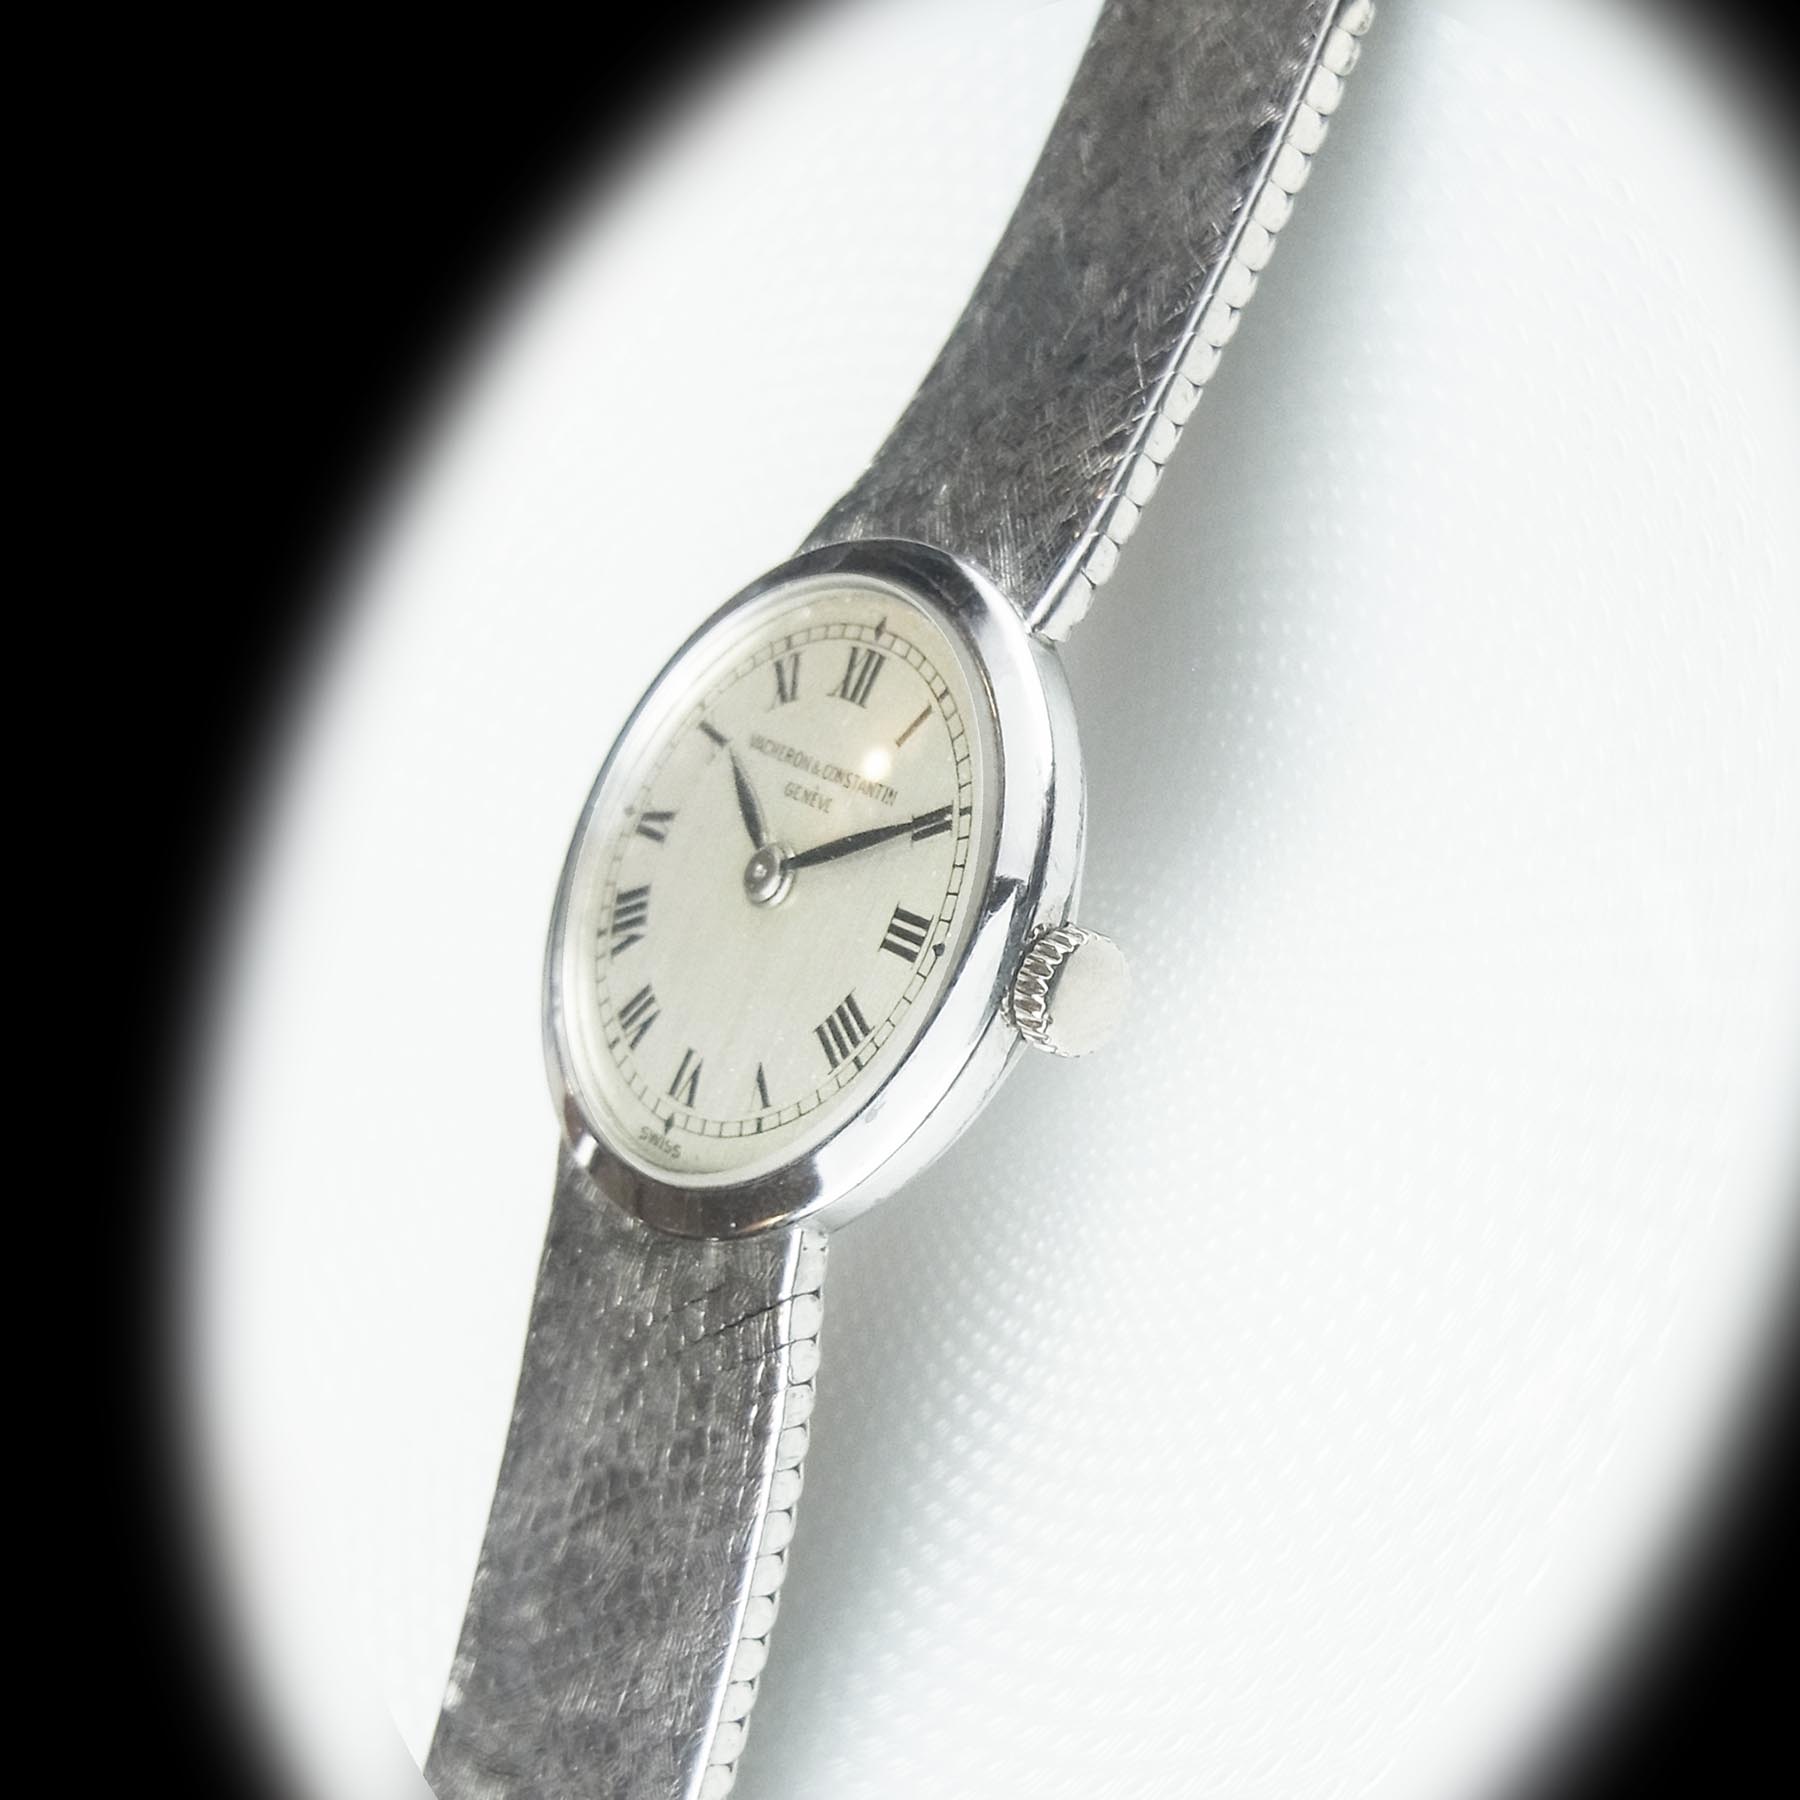 ヴァシュロン コンスタンタン – 18金ホワイトゴールド手巻き腕時計 